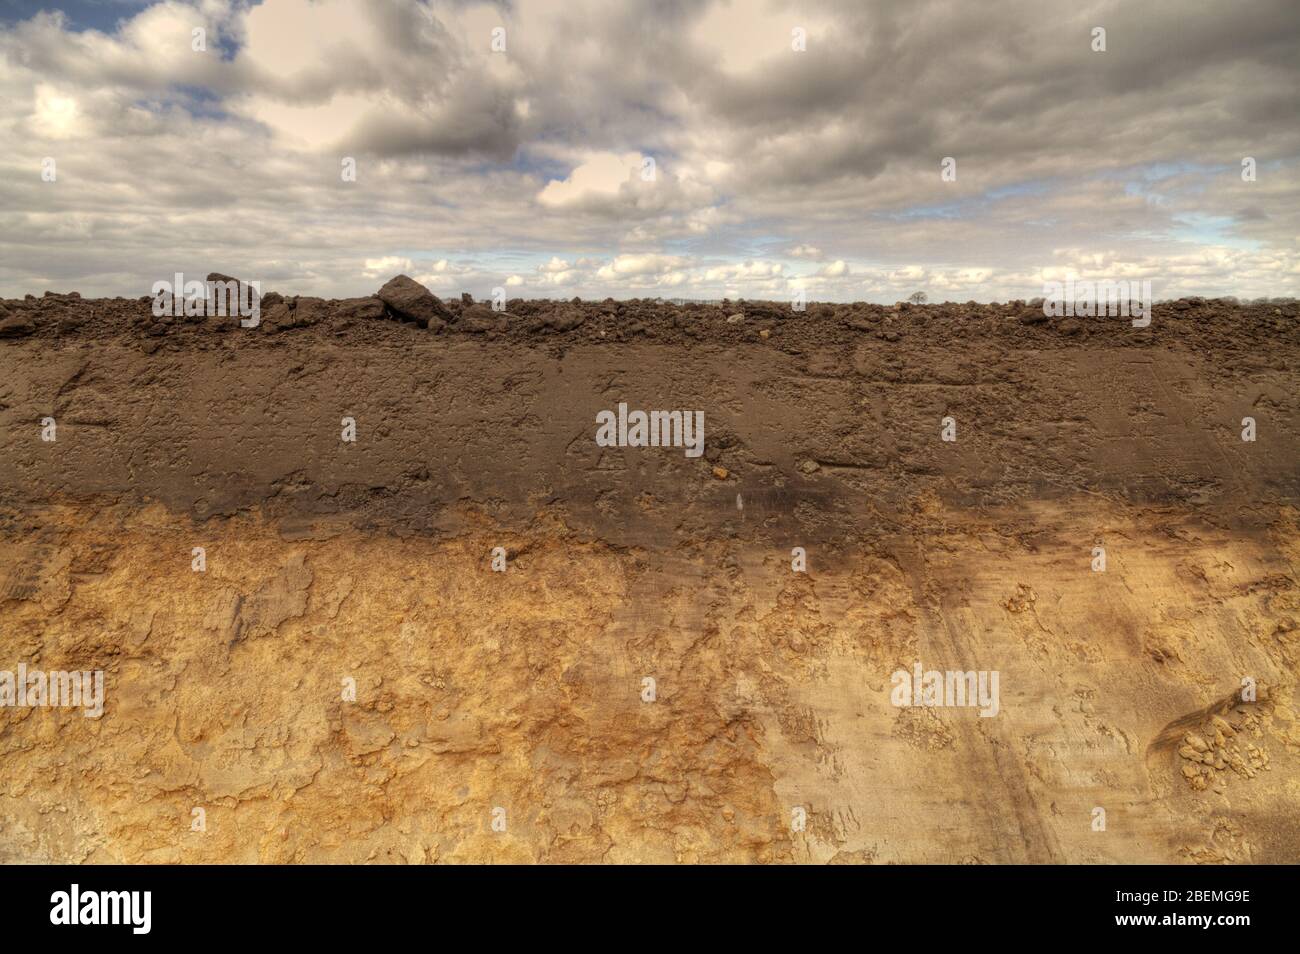 Die Seite eines frisch gegrabenen Feldrainage Graben zeigt Bodenschichtung humos Oberboden und Eisenniederschläge im Untergrund Stockfoto